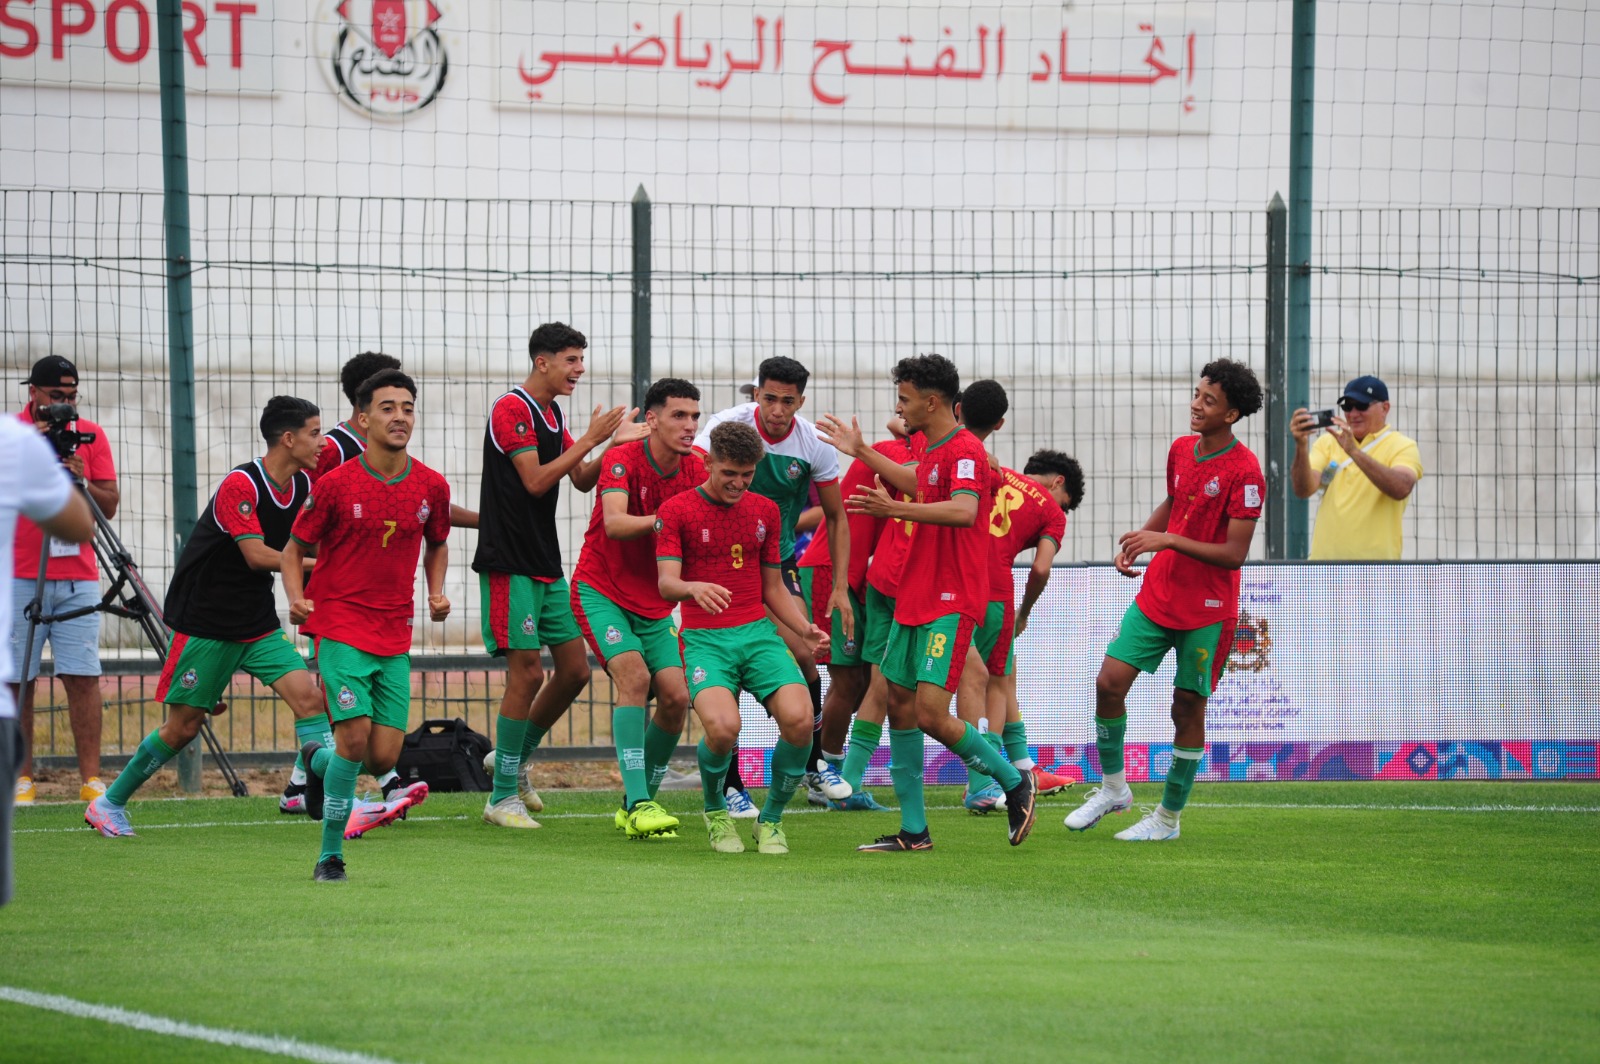 Football scolaire : Maroc-France en finale de Championnat du monde